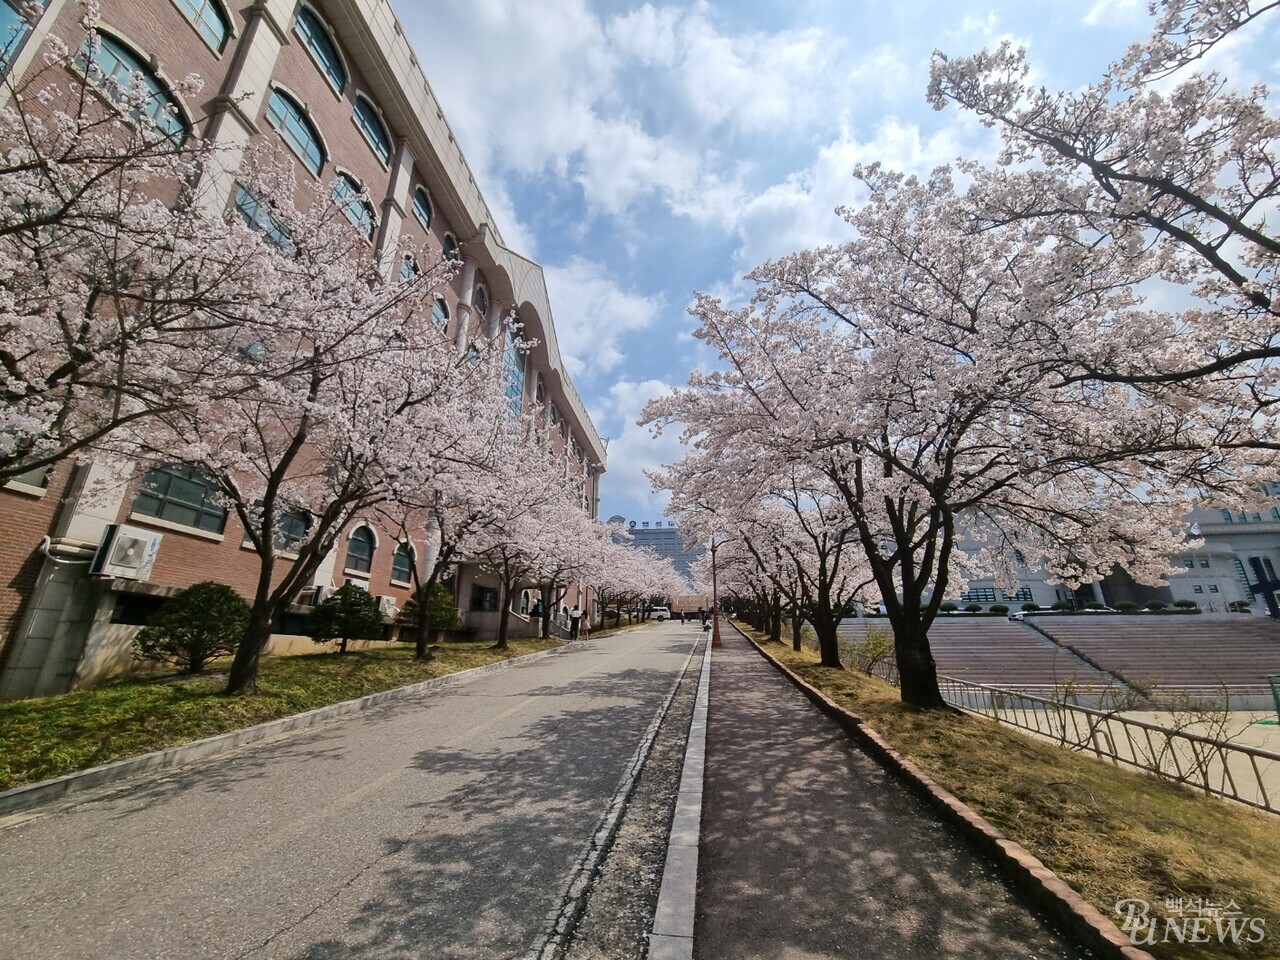  학생복지관 옆에서 바라본 벚꽃길.